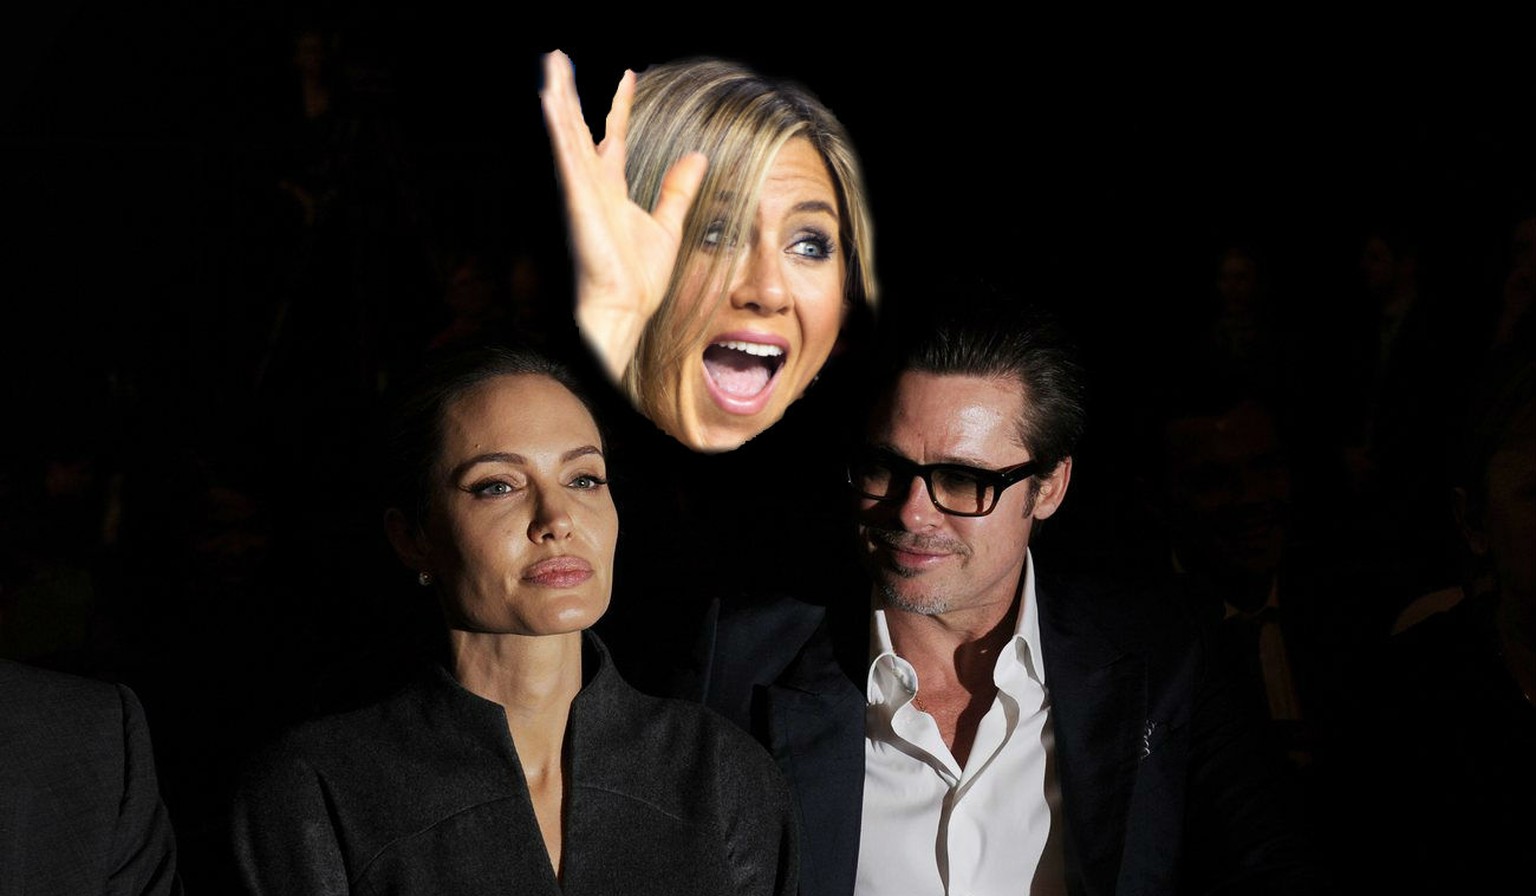 Da scheint etwas zwischen Angelina Jolie und Brad Pitt zu stehen.